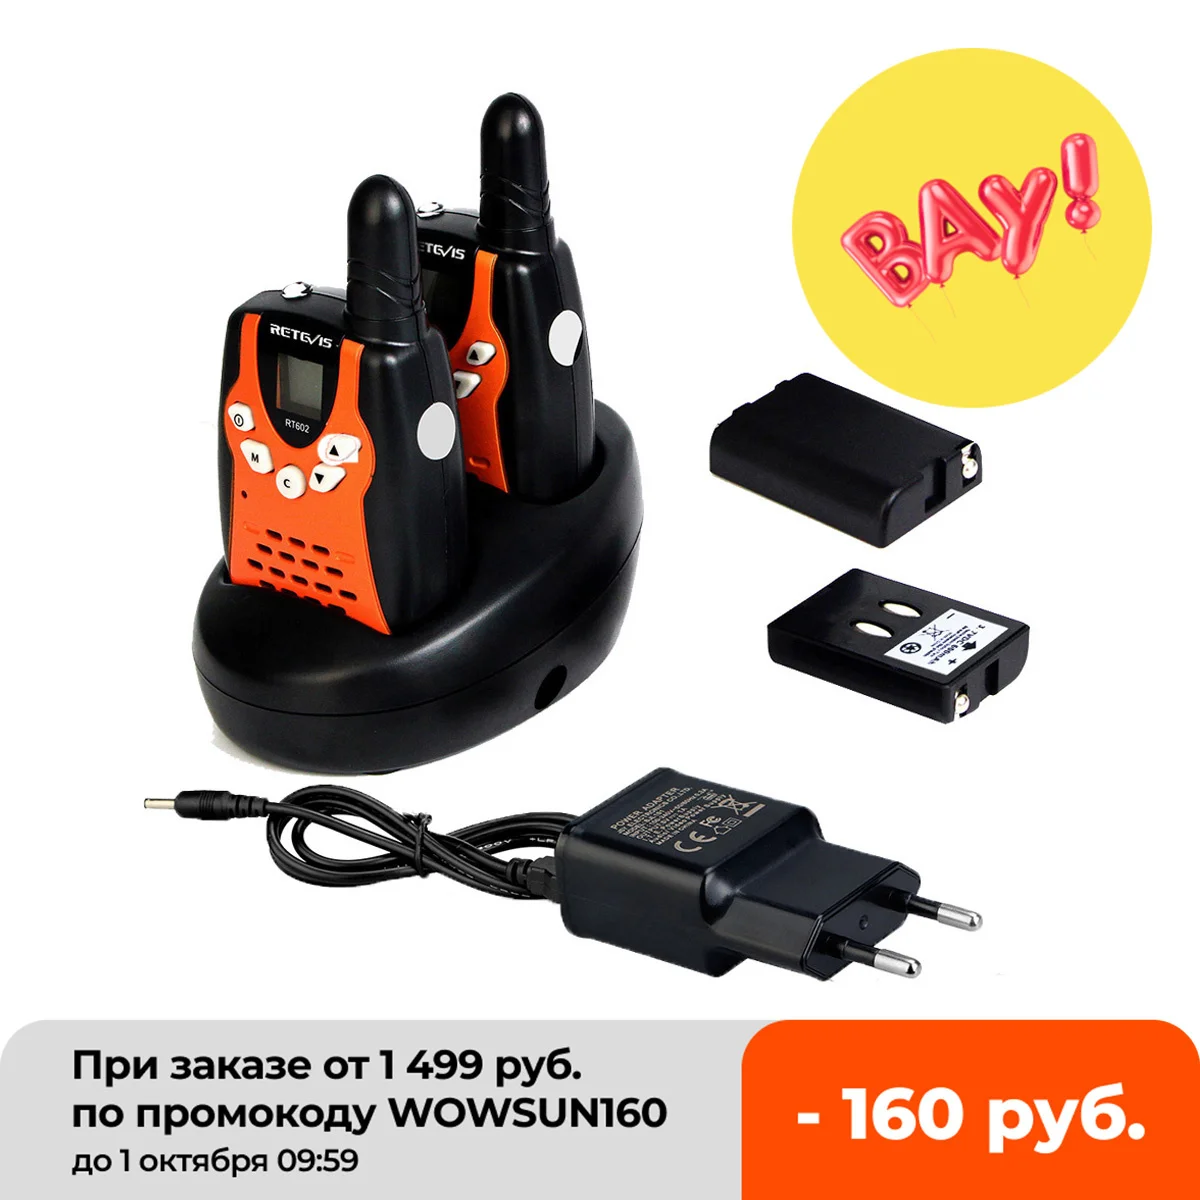 

Retevis rt602 walkie talkie children's charging 2 UDS 0.5W Radio Children's battery best children's toy gift walkie talkie